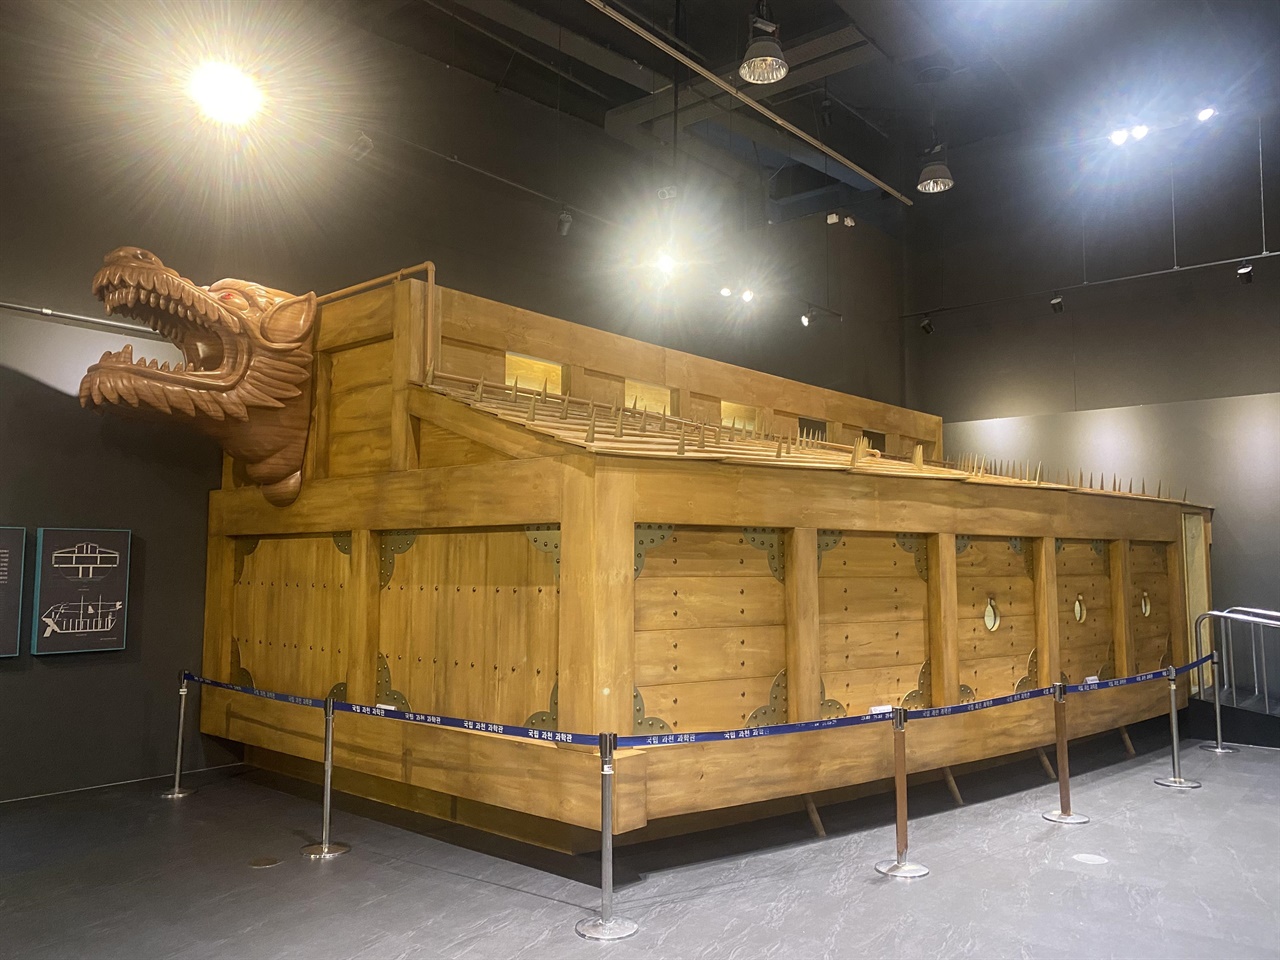 실물 크기 그대로 제작된 대형 거북선은 2022년 12월에 해군사관학교 박물관에서 발표한 거북선 관련 최신 연구 결과를 반영해 제작했다. 거북선의 약 4분의 1 부분이 재현됐다.